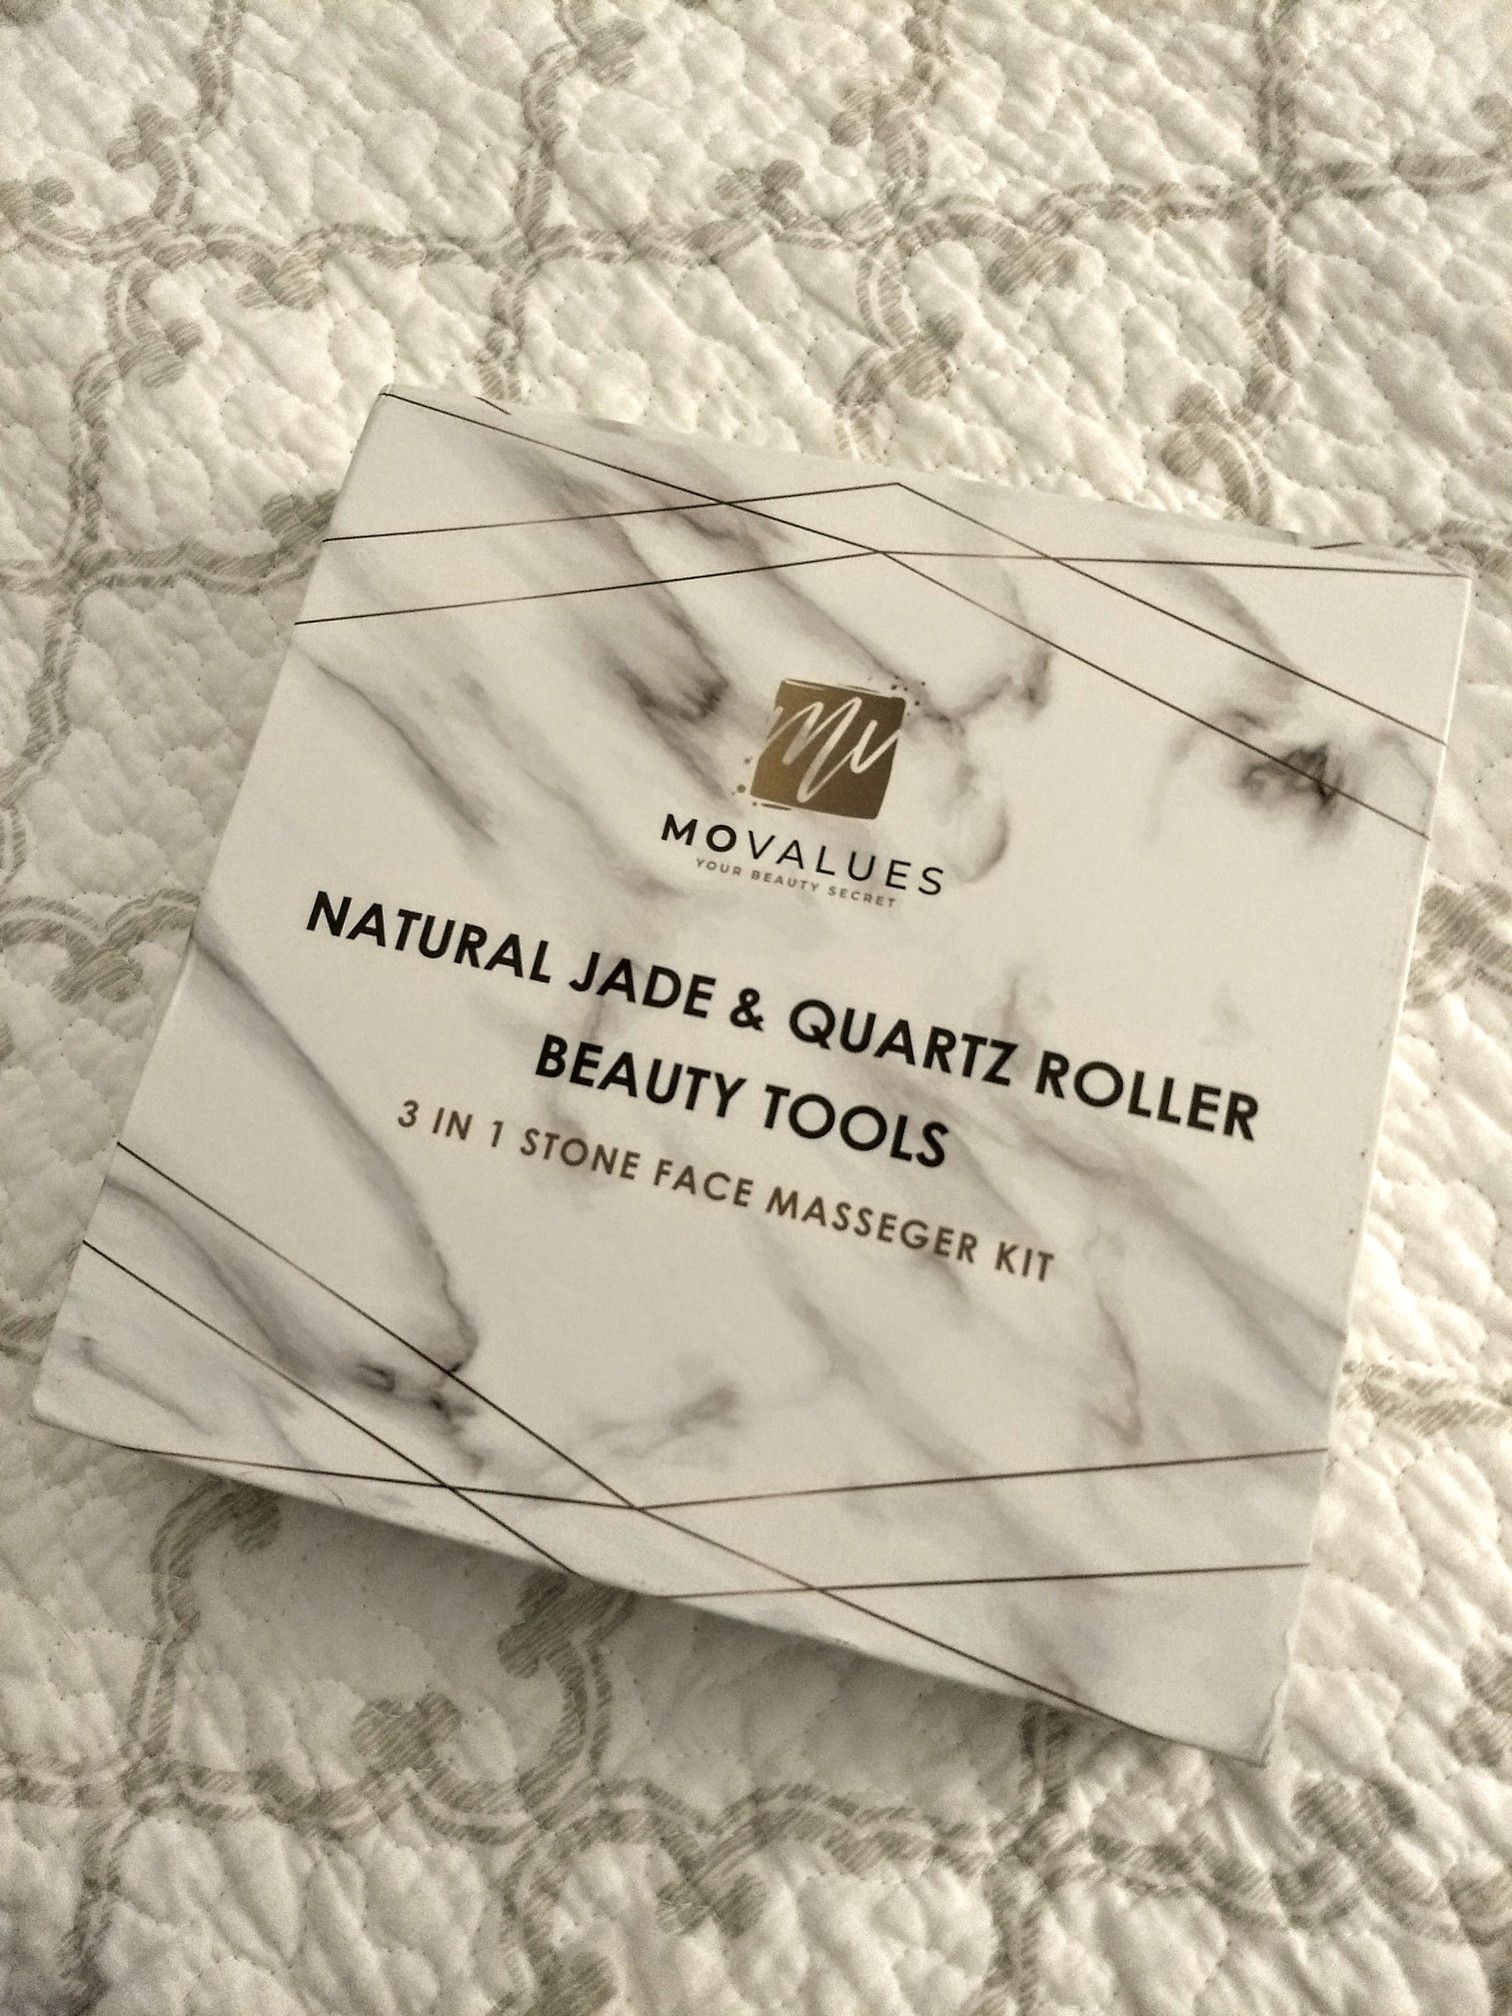 New Natural Jade & Quartz Roller Beauty Tools